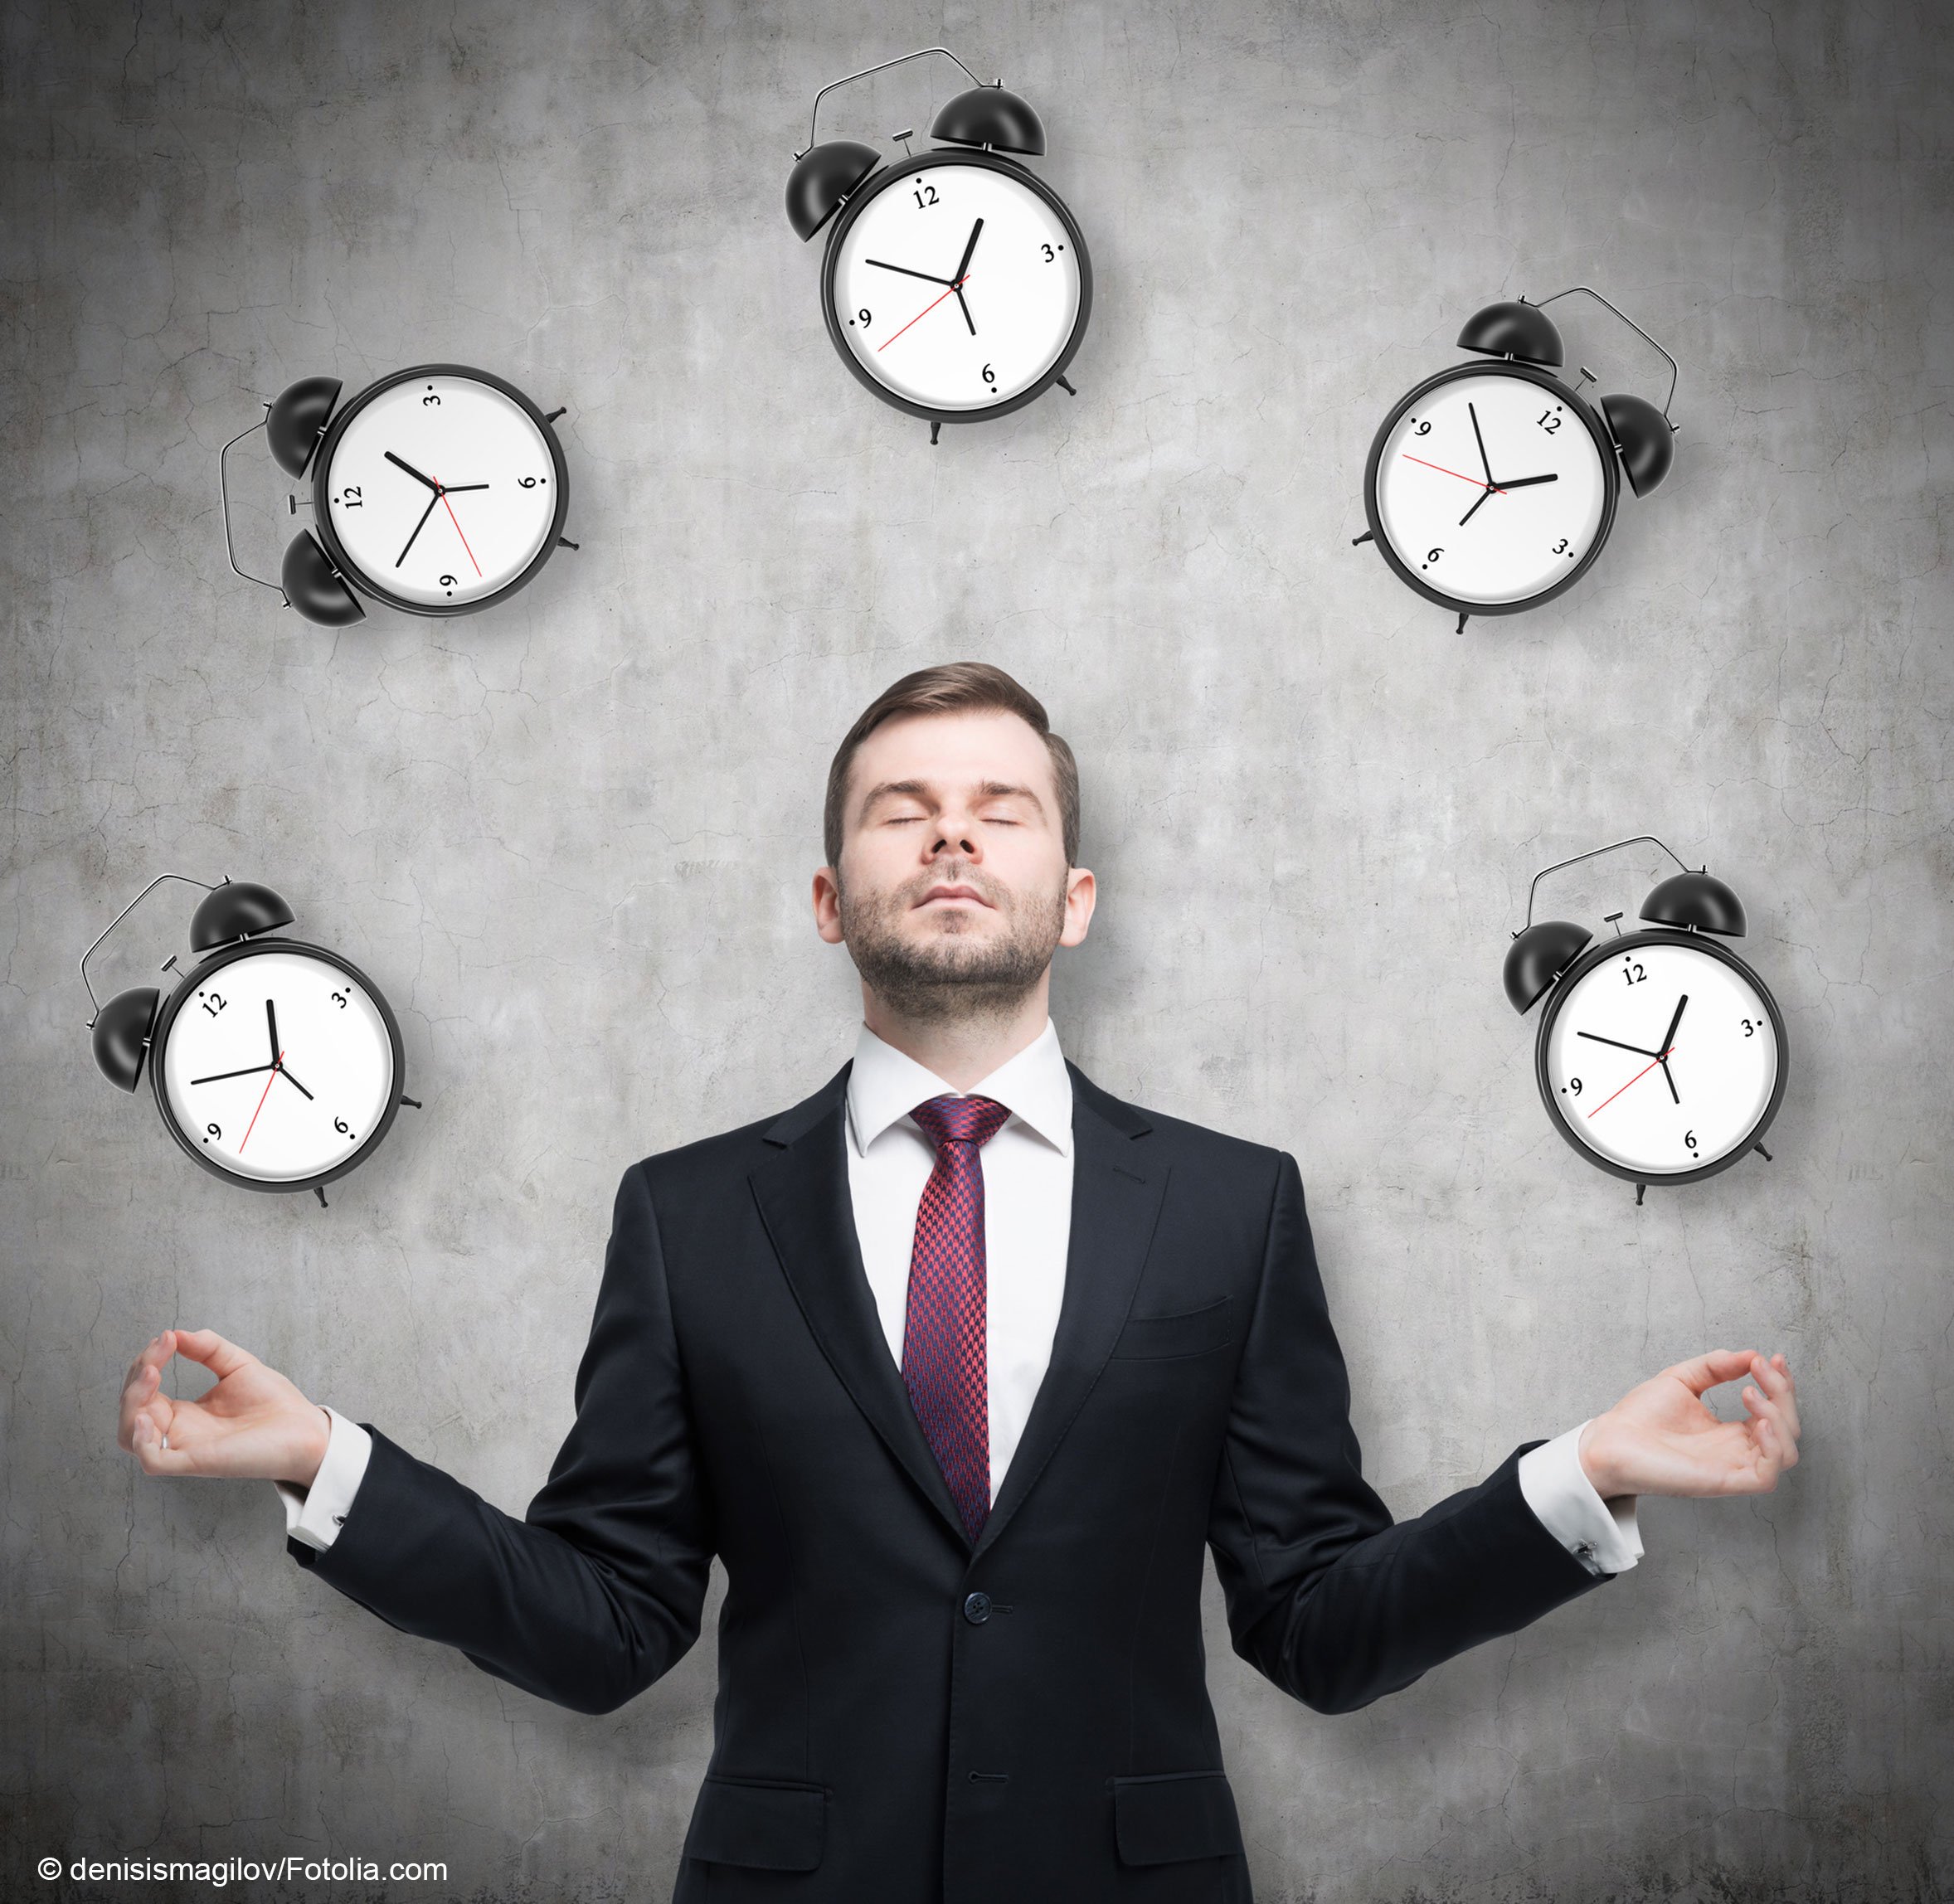 Опыт организации времени. Тайм-менеджмент. Человек с часами. Эффективный тайм менеджмент. Искусство управления временем.